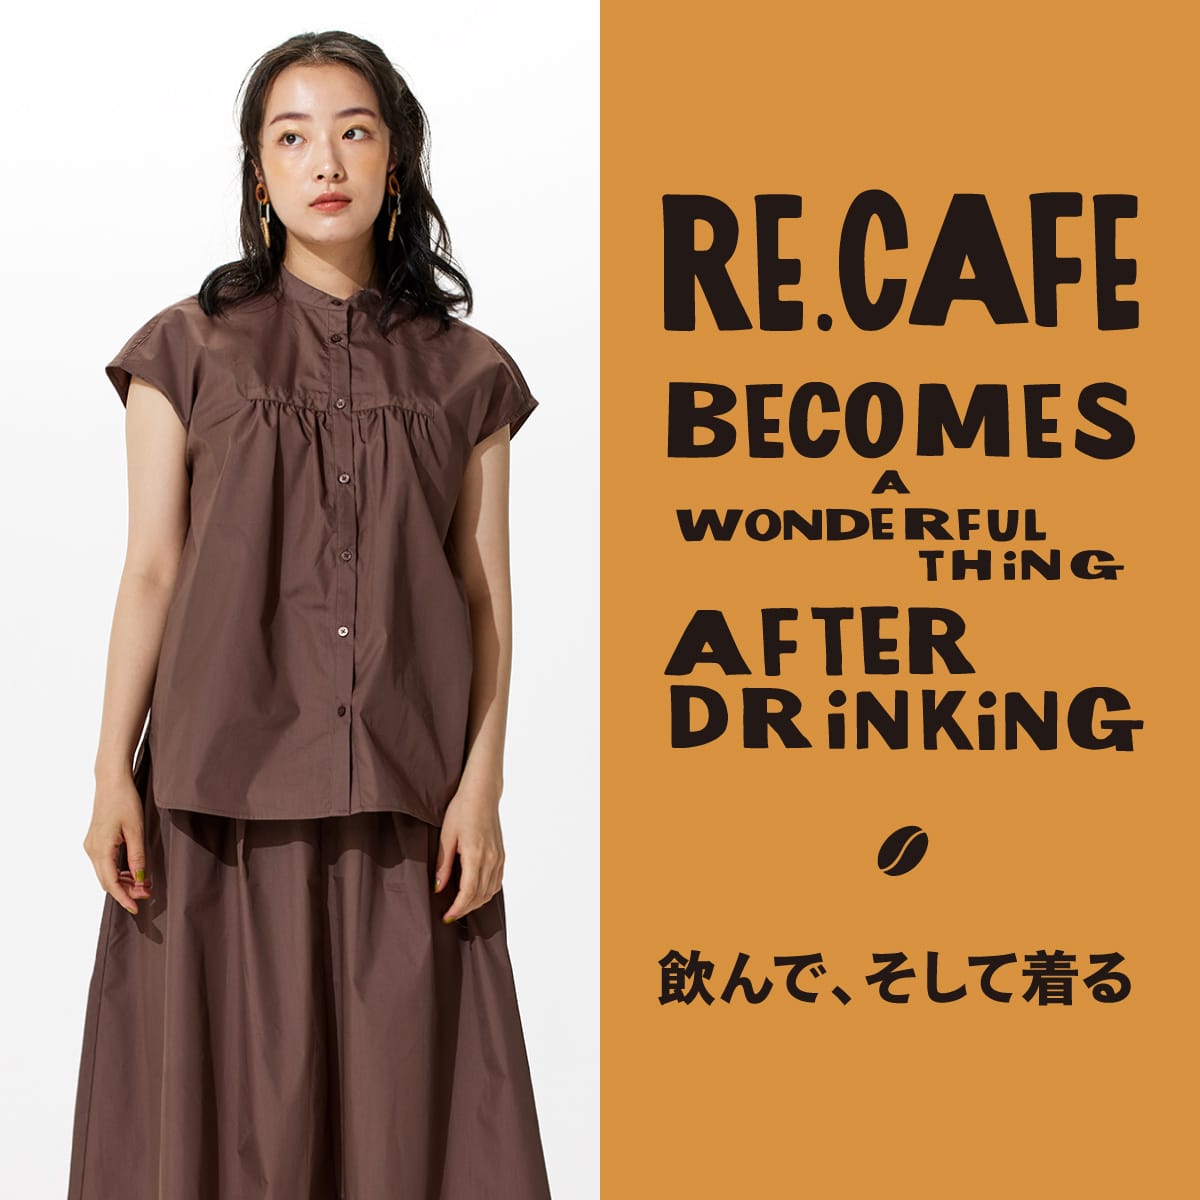 ファッションブランドcoenが環境に配慮しコーヒーの出し殻を再利用した【Re café】シリーズを発売